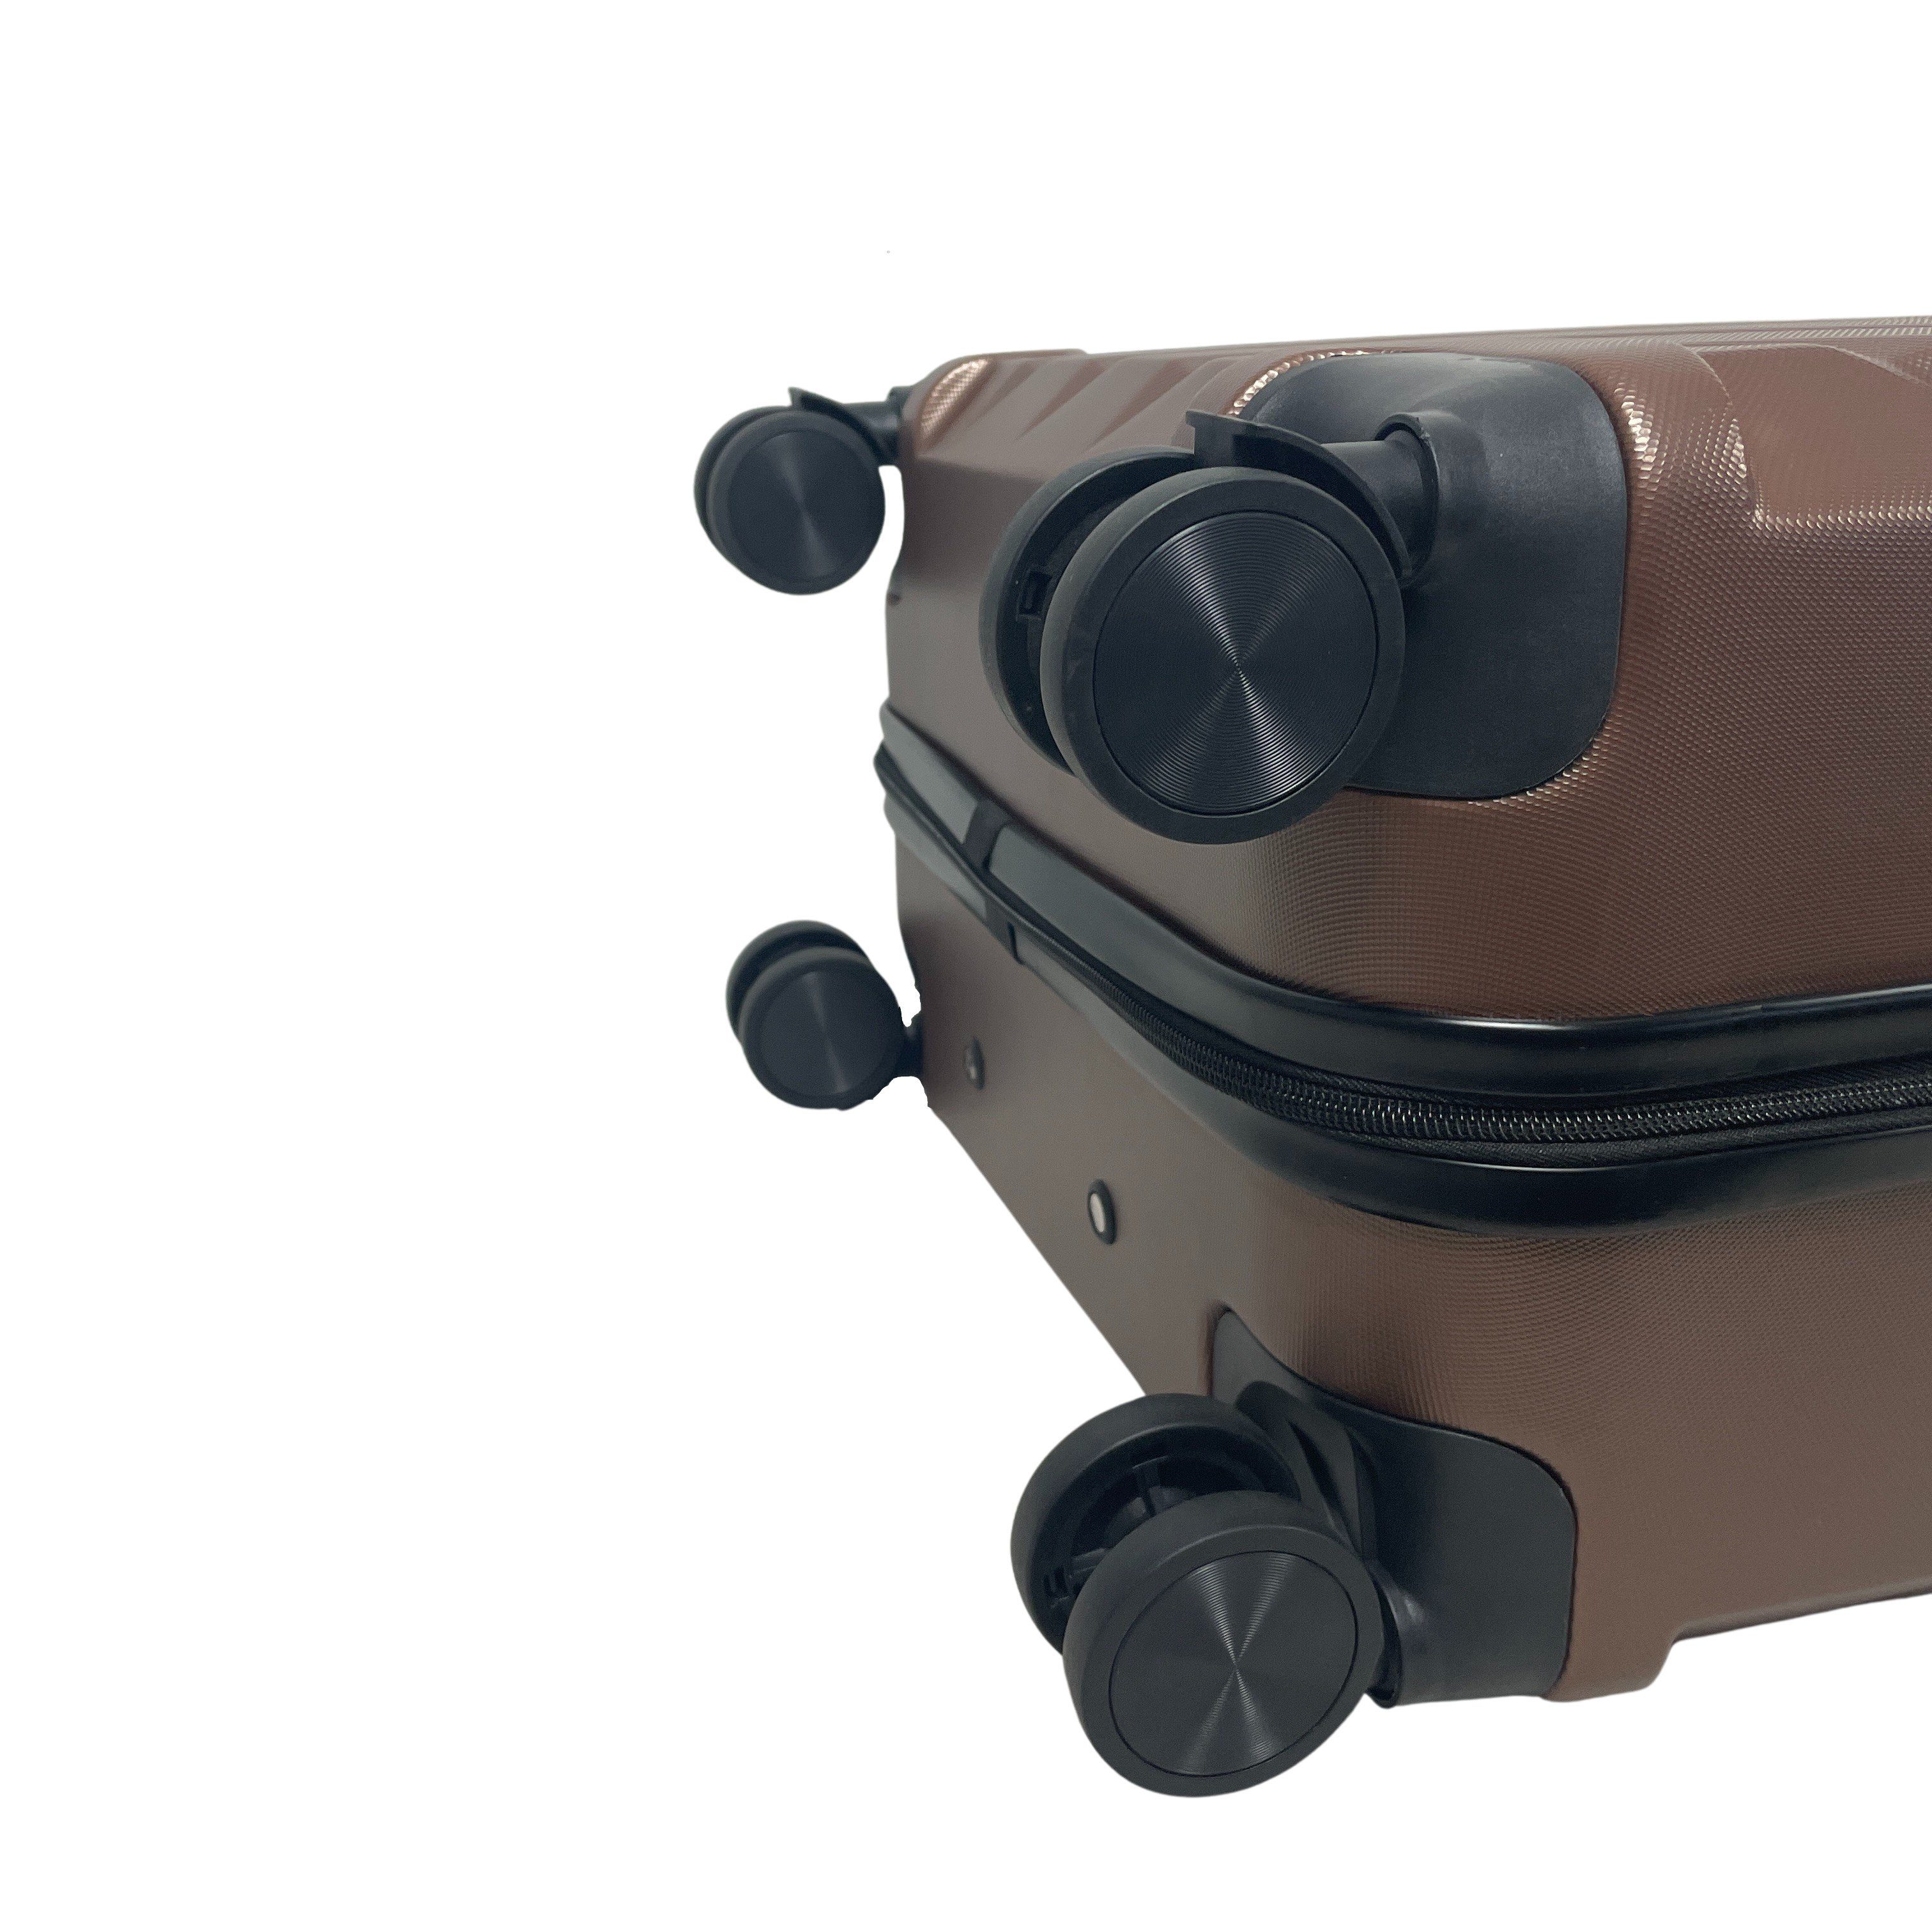 MTB Koffer Hartschalenkoffer ABS Kaffee (Handgepäck-Mittel-Groß-Set) Reisekoffer